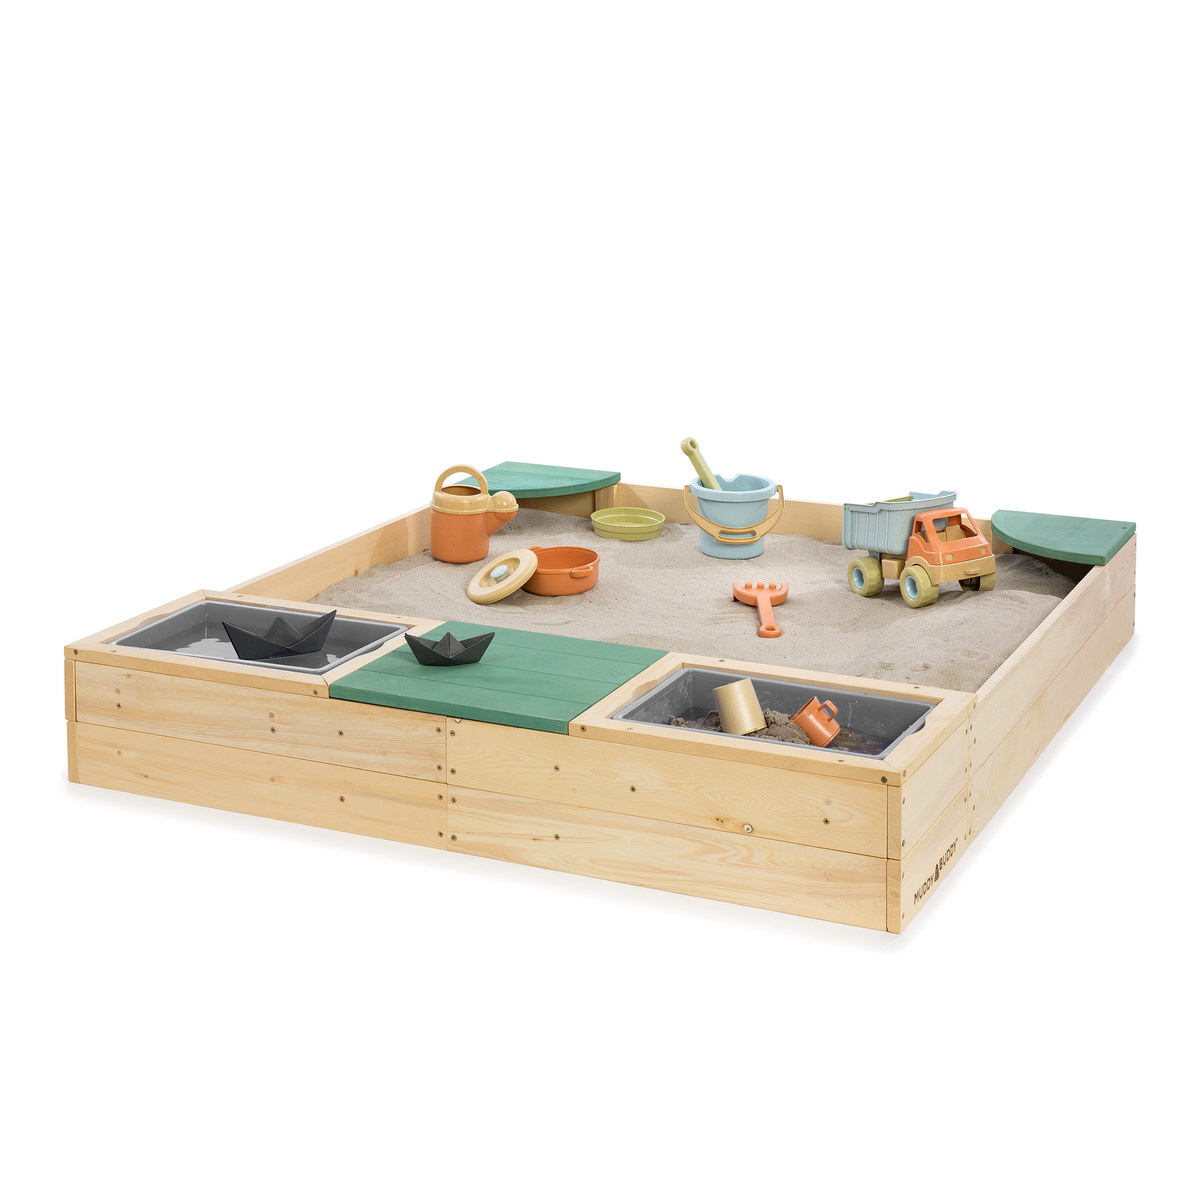 MUDDY BUDDY® einzigartige Holz Outdoor-Spielzeuge aus